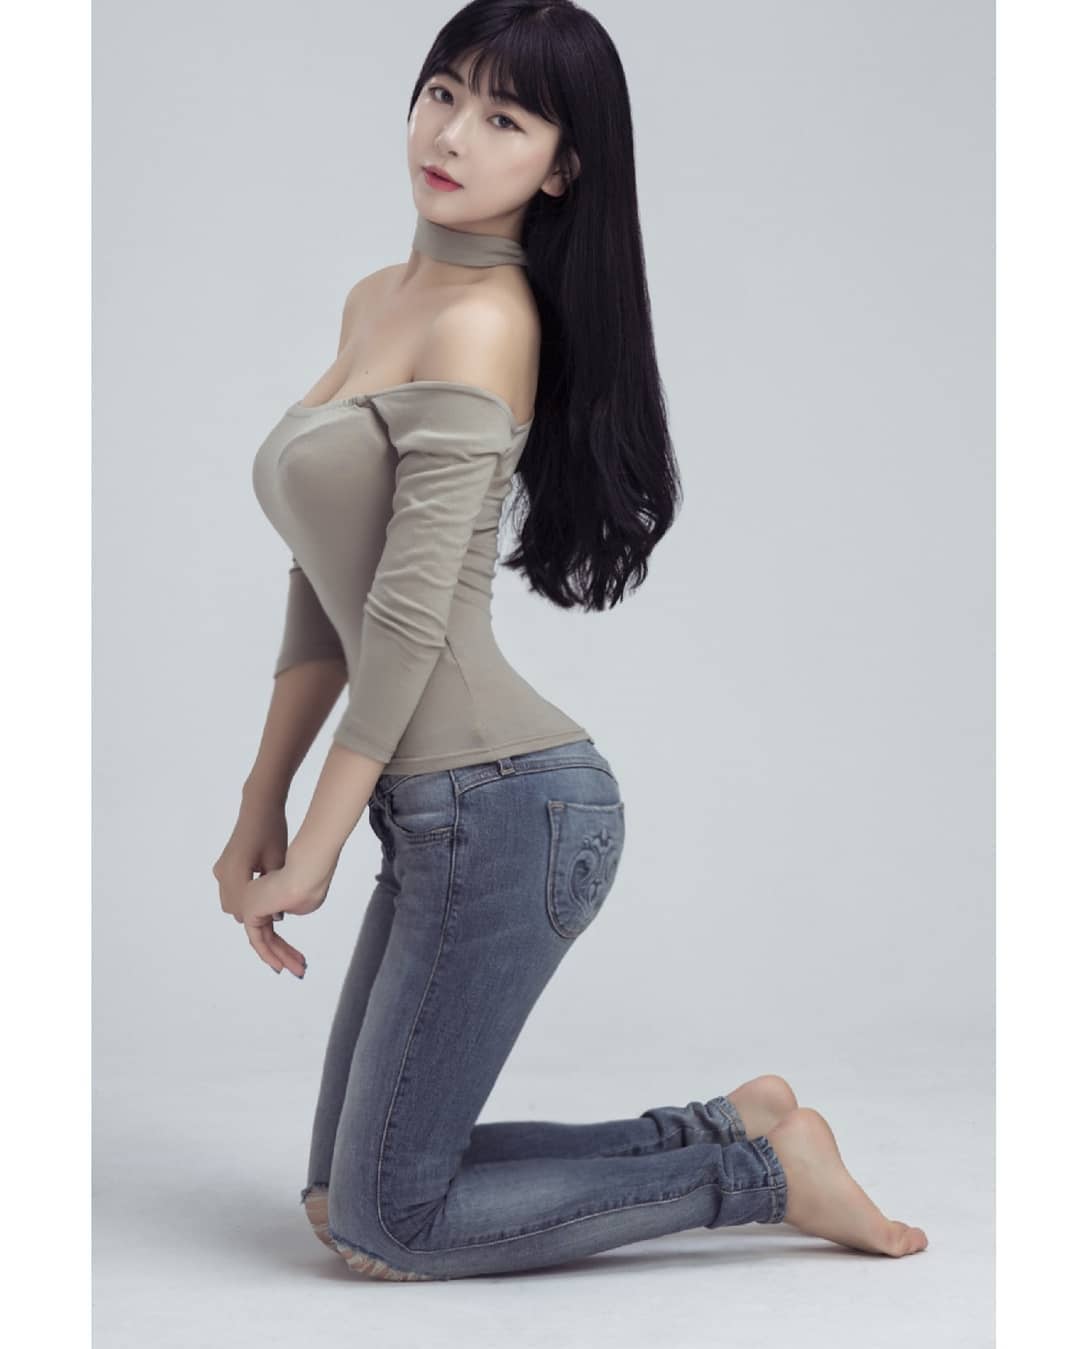 모델 수아